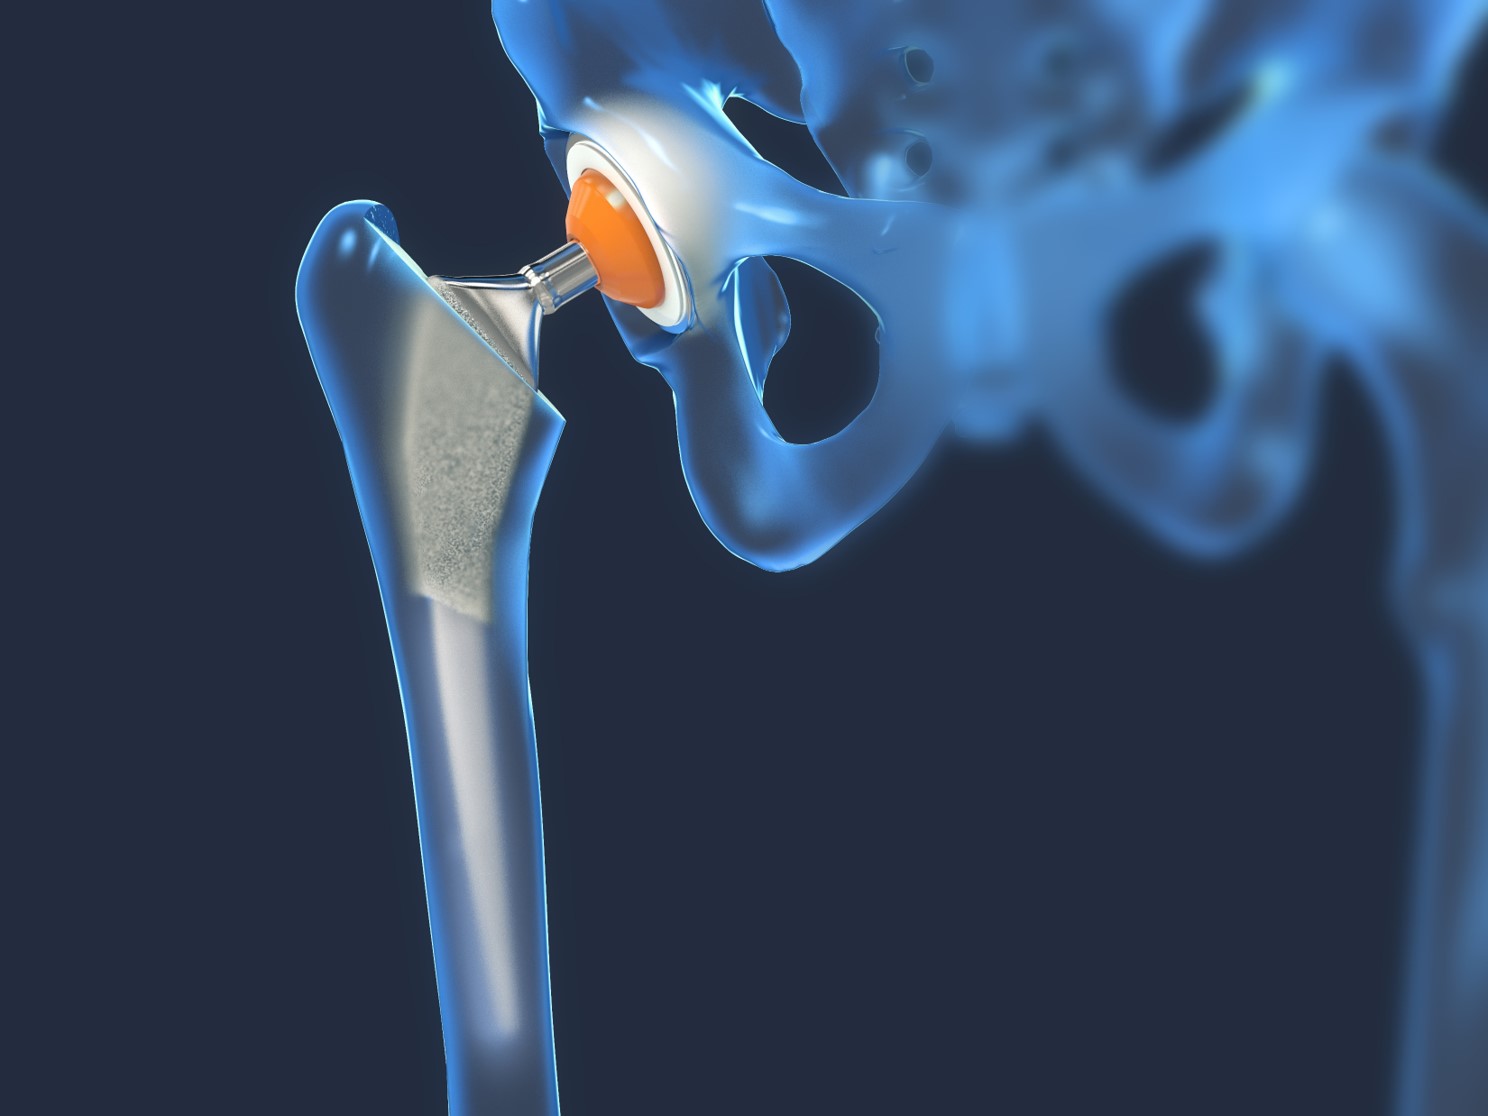 Hüftprothese in der Medizintechnik mit optischer 3D Messtechnik